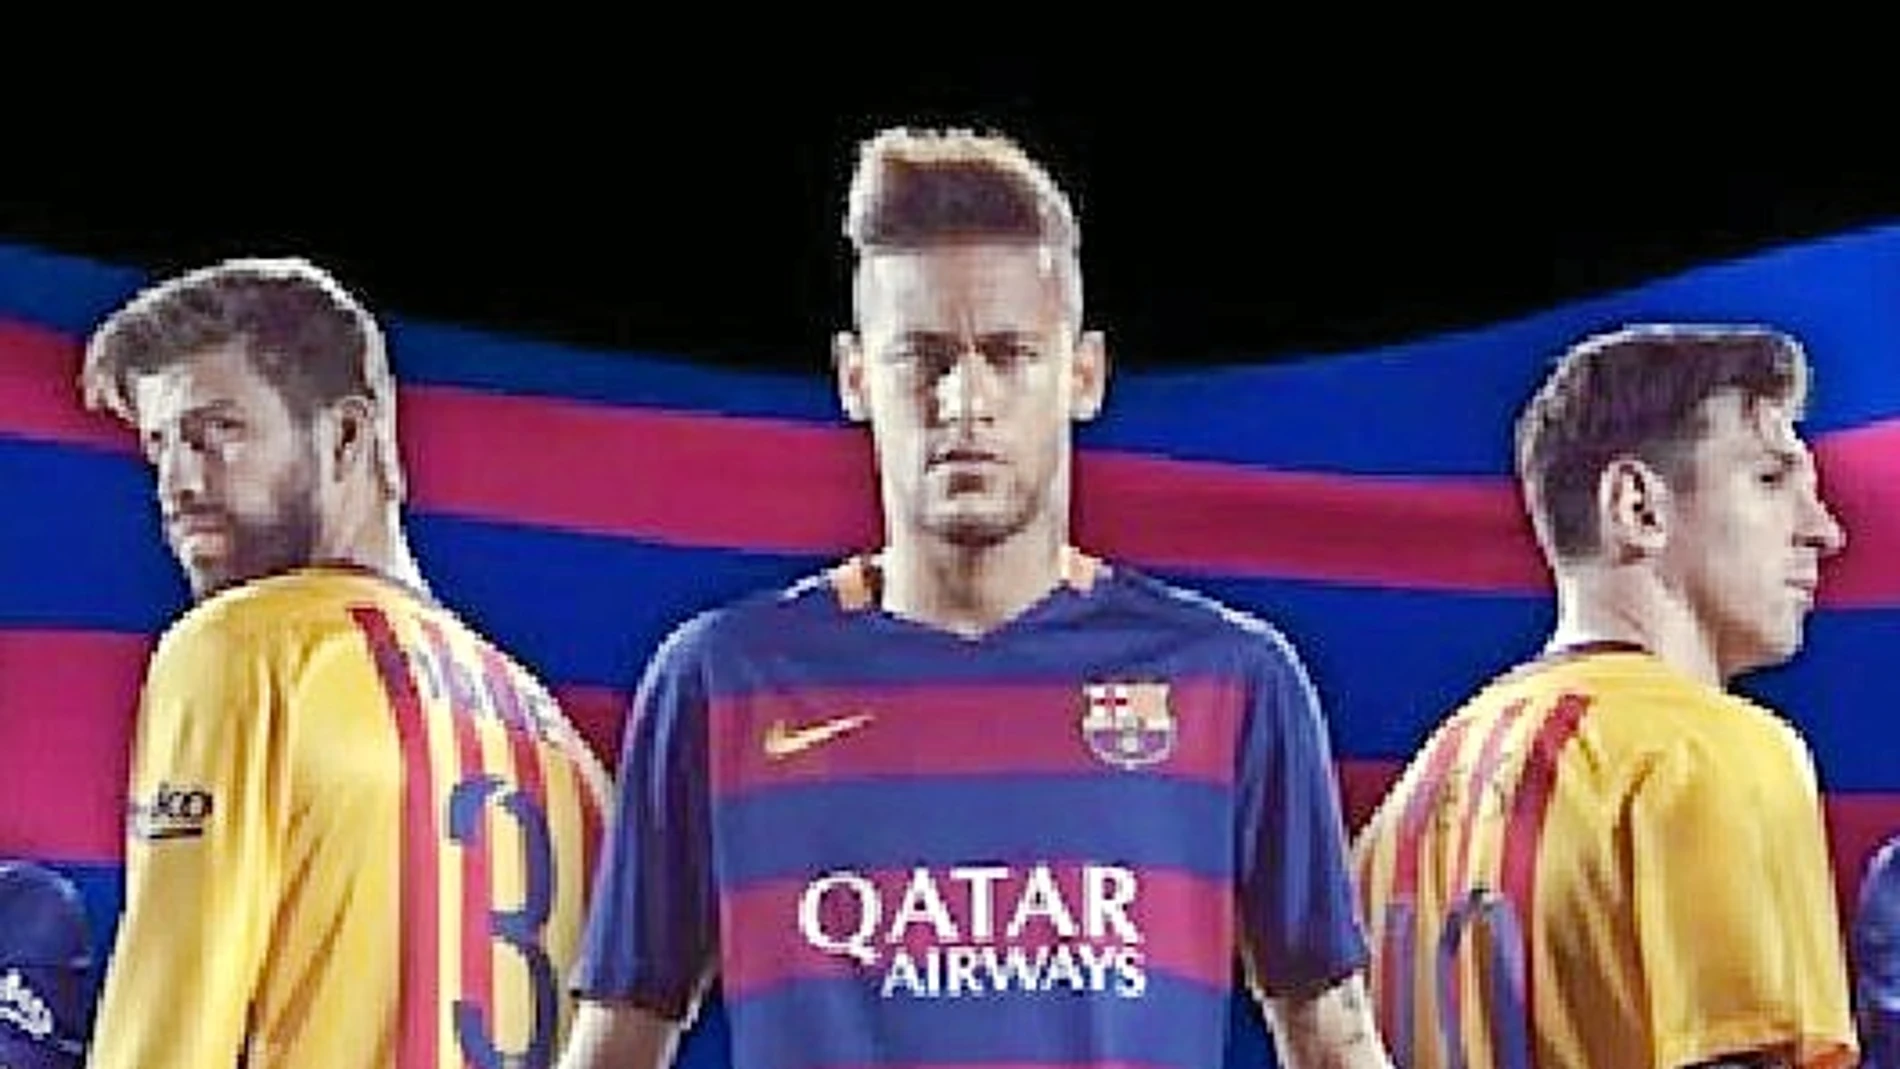 Las nuevas camisetas del Barcelona, para la temporada 2015/16, son innovadoras y polémicas